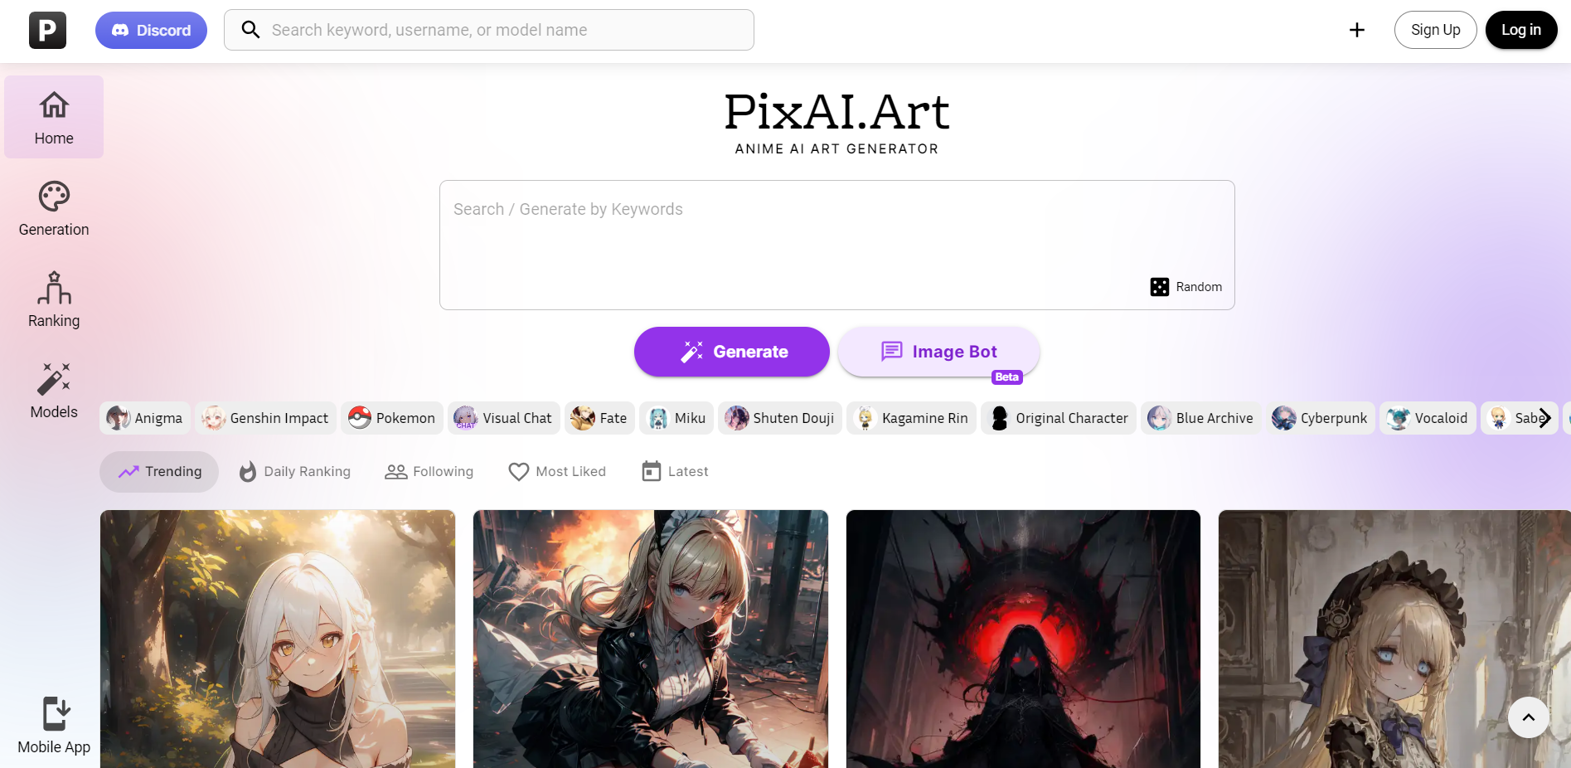 PixAI Art website